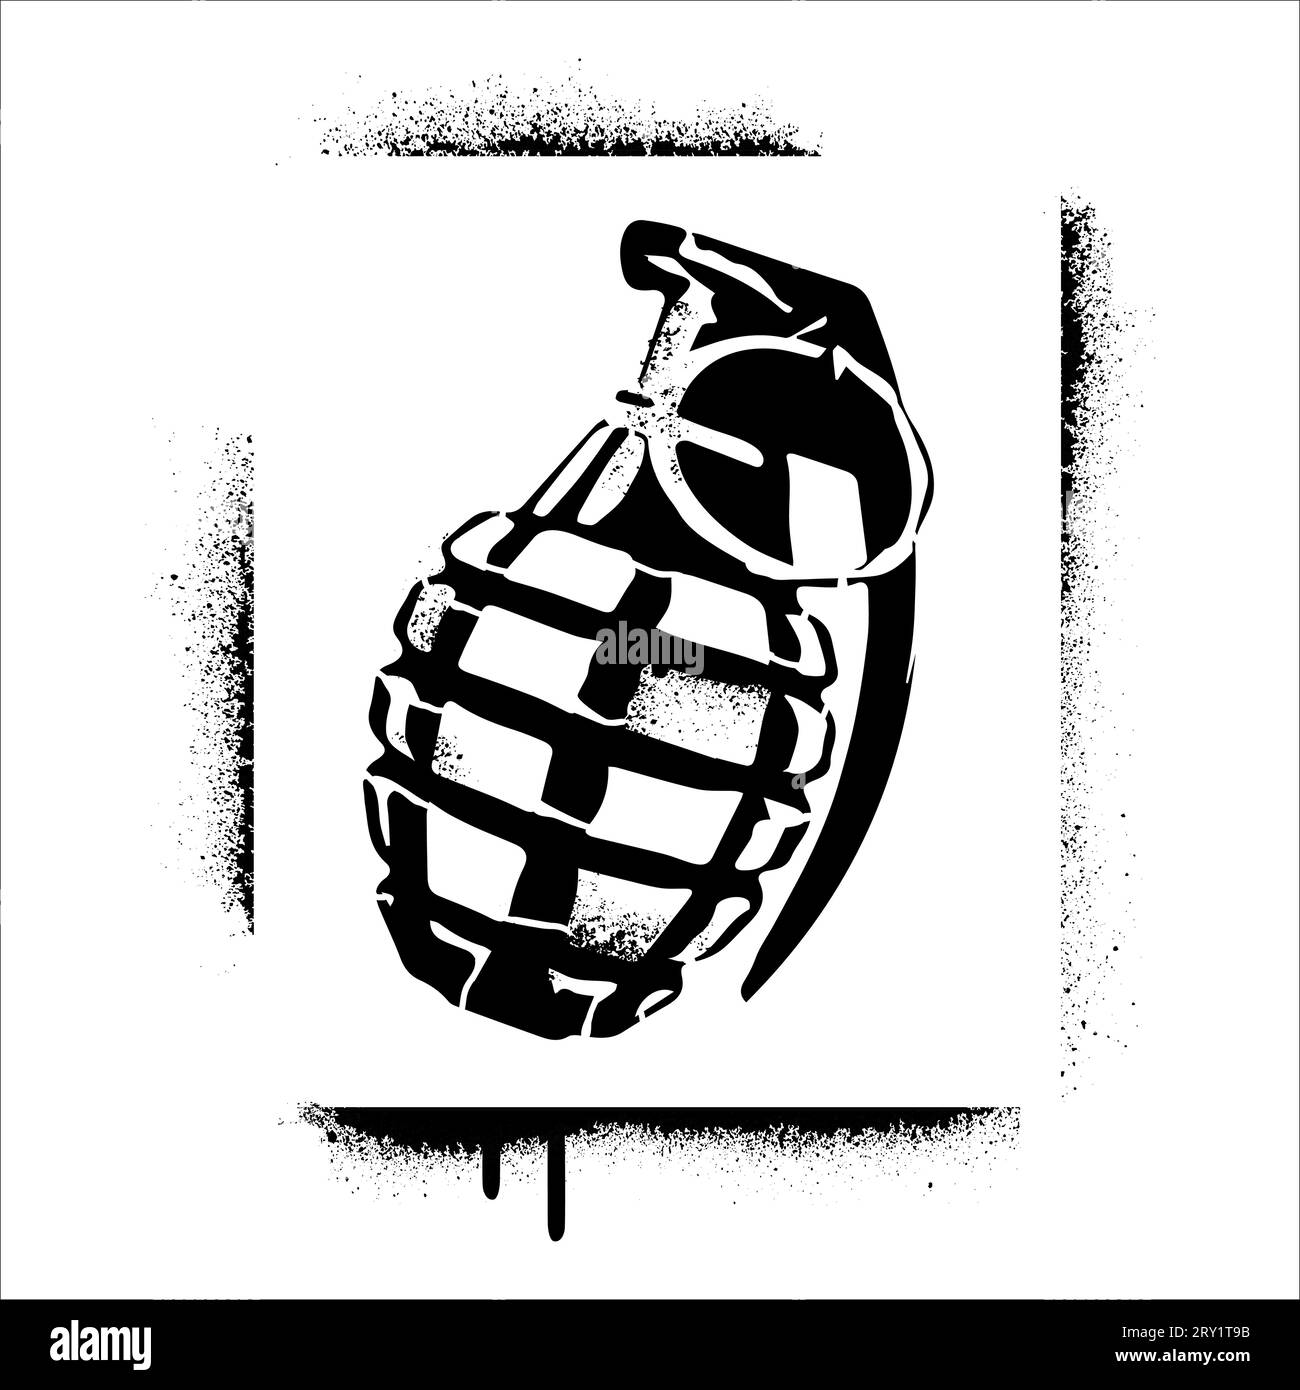 Hand grenade silhouette. Spray graffiti stencil. Stock Vector